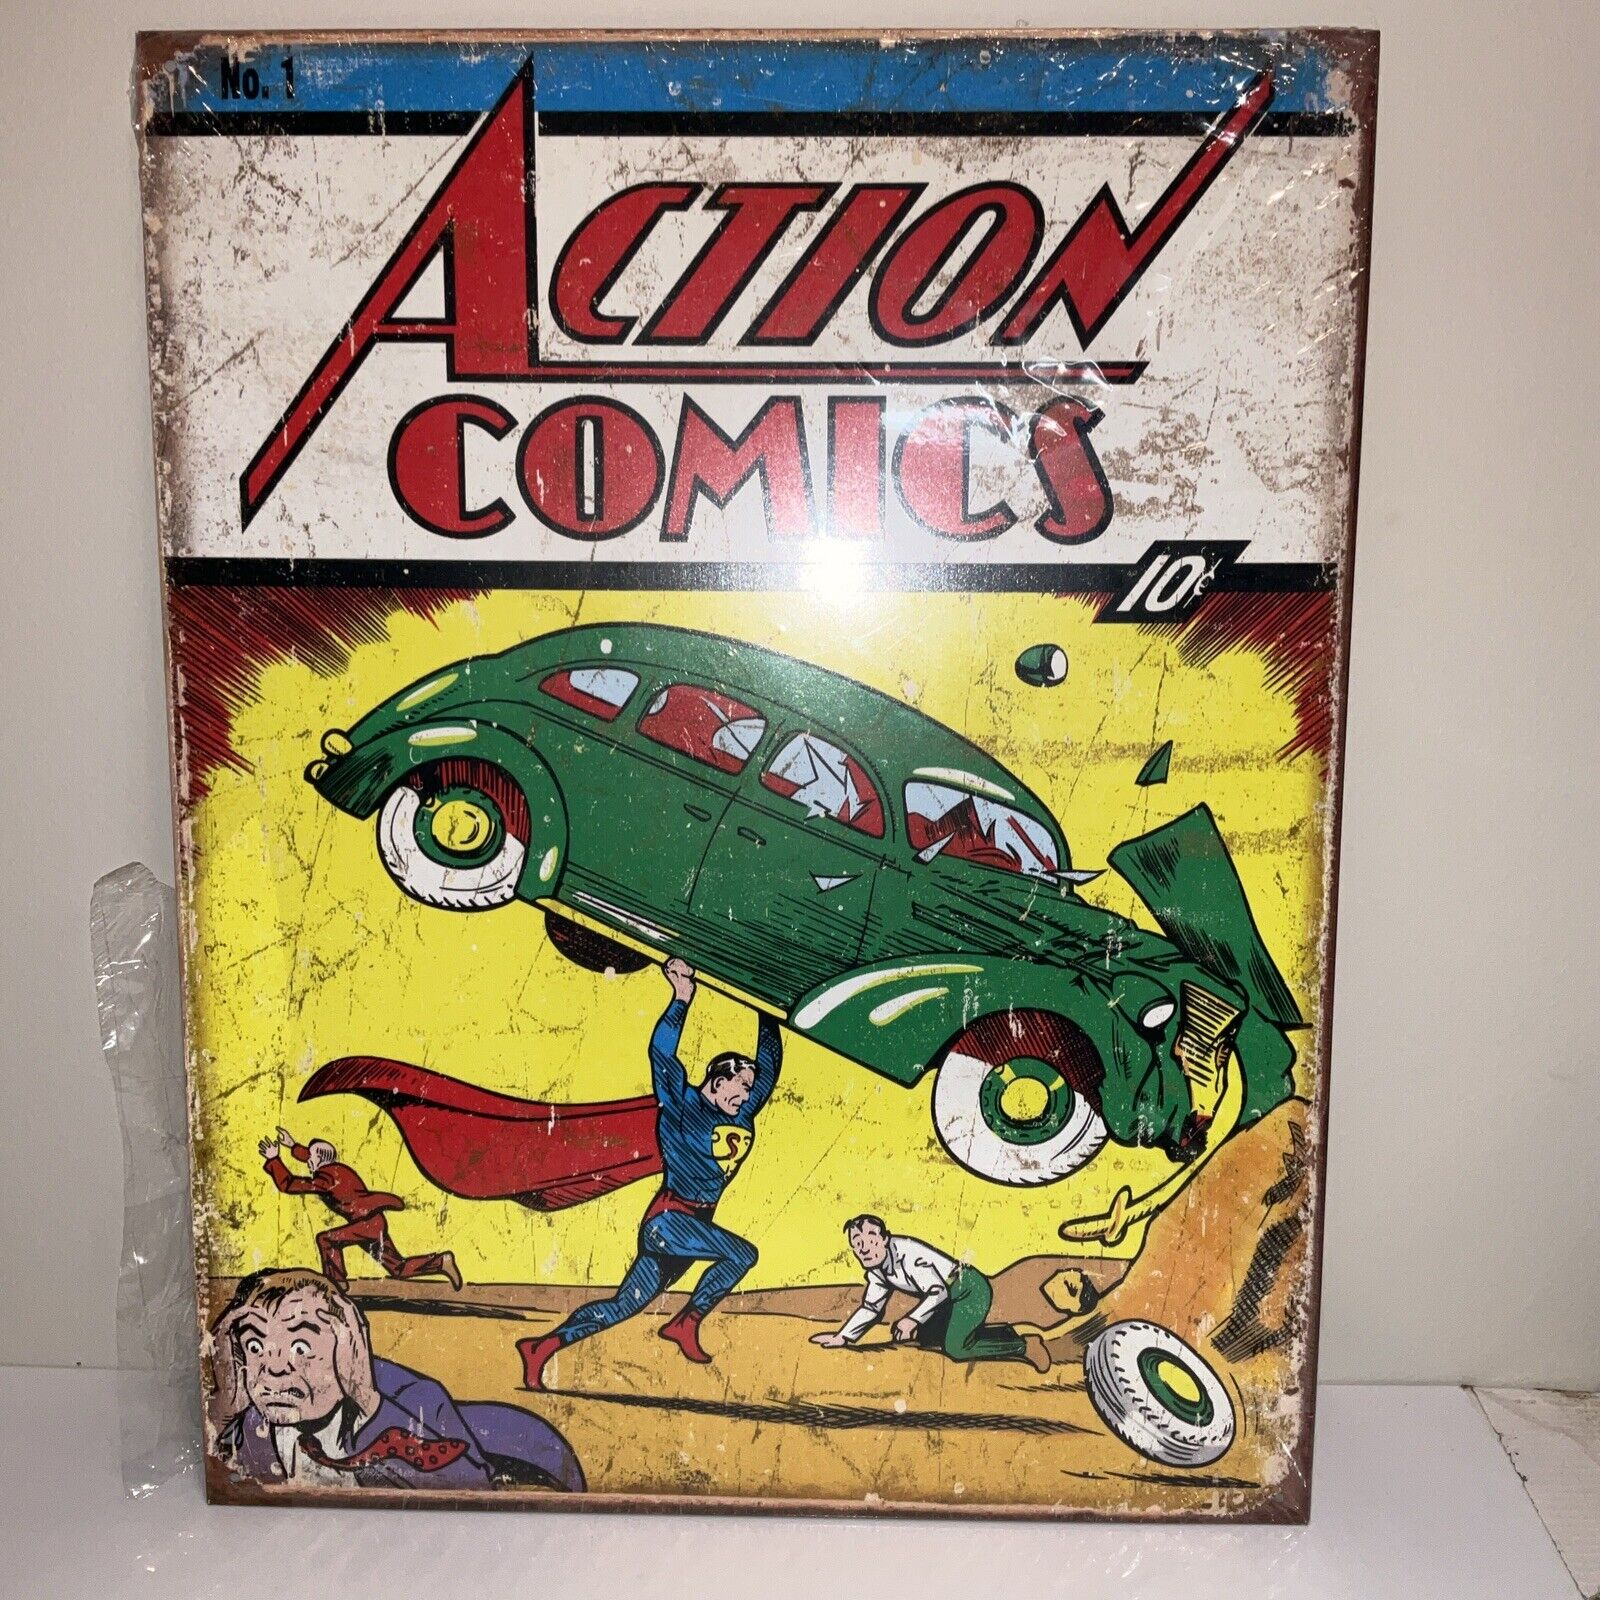 New Action Comics Cover No. #1 Tin Metal Sign Man Cave Garage Decor 12.5 X 16